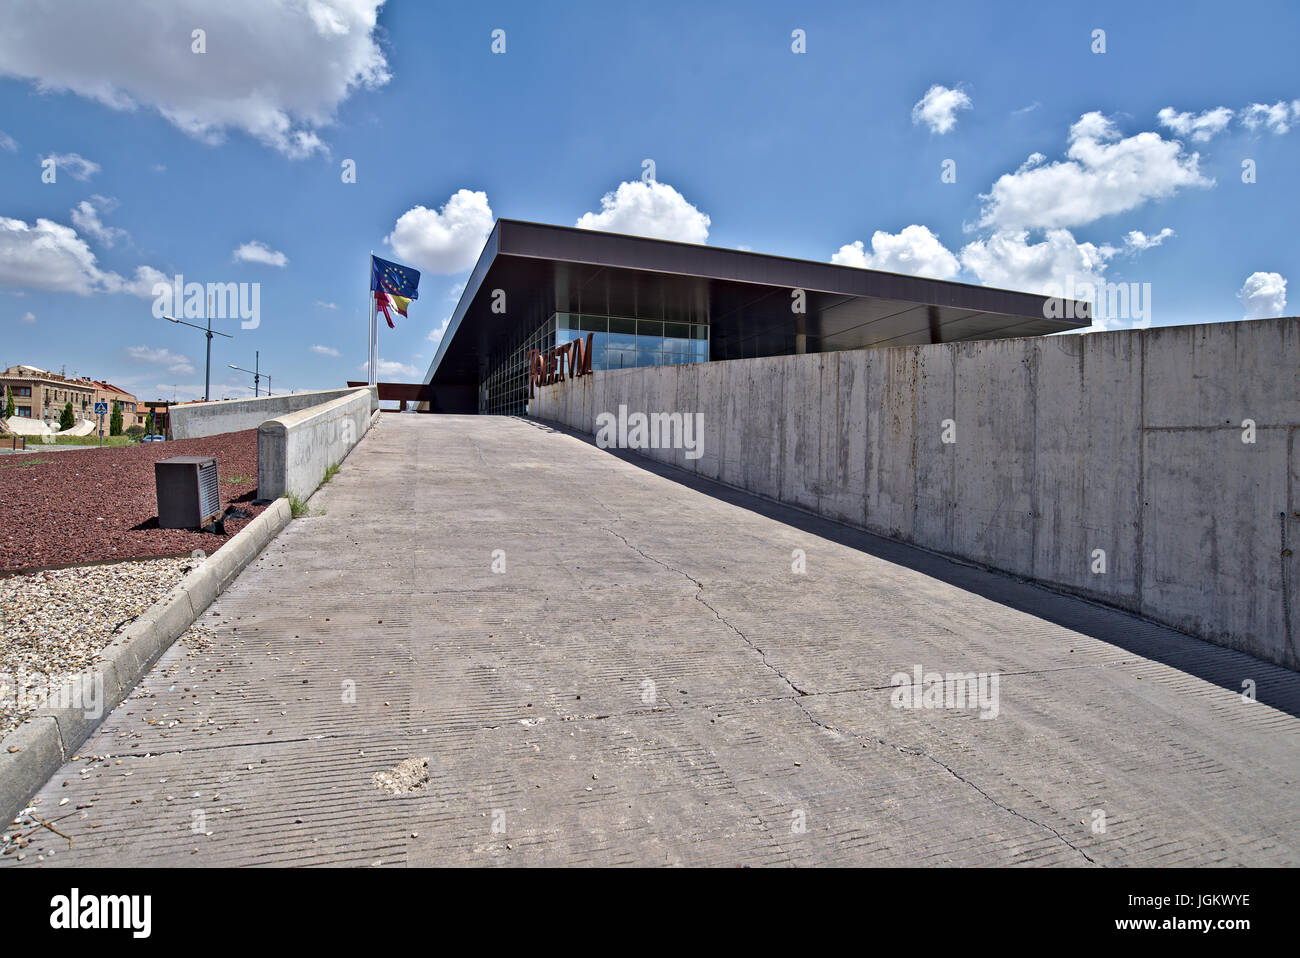 Toletum Toledo pour le centre touristique. Construction Bâtiment public sans succès de nos jours non utilisés. Image prise à Tolède, Juillet 2017 Banque D'Images